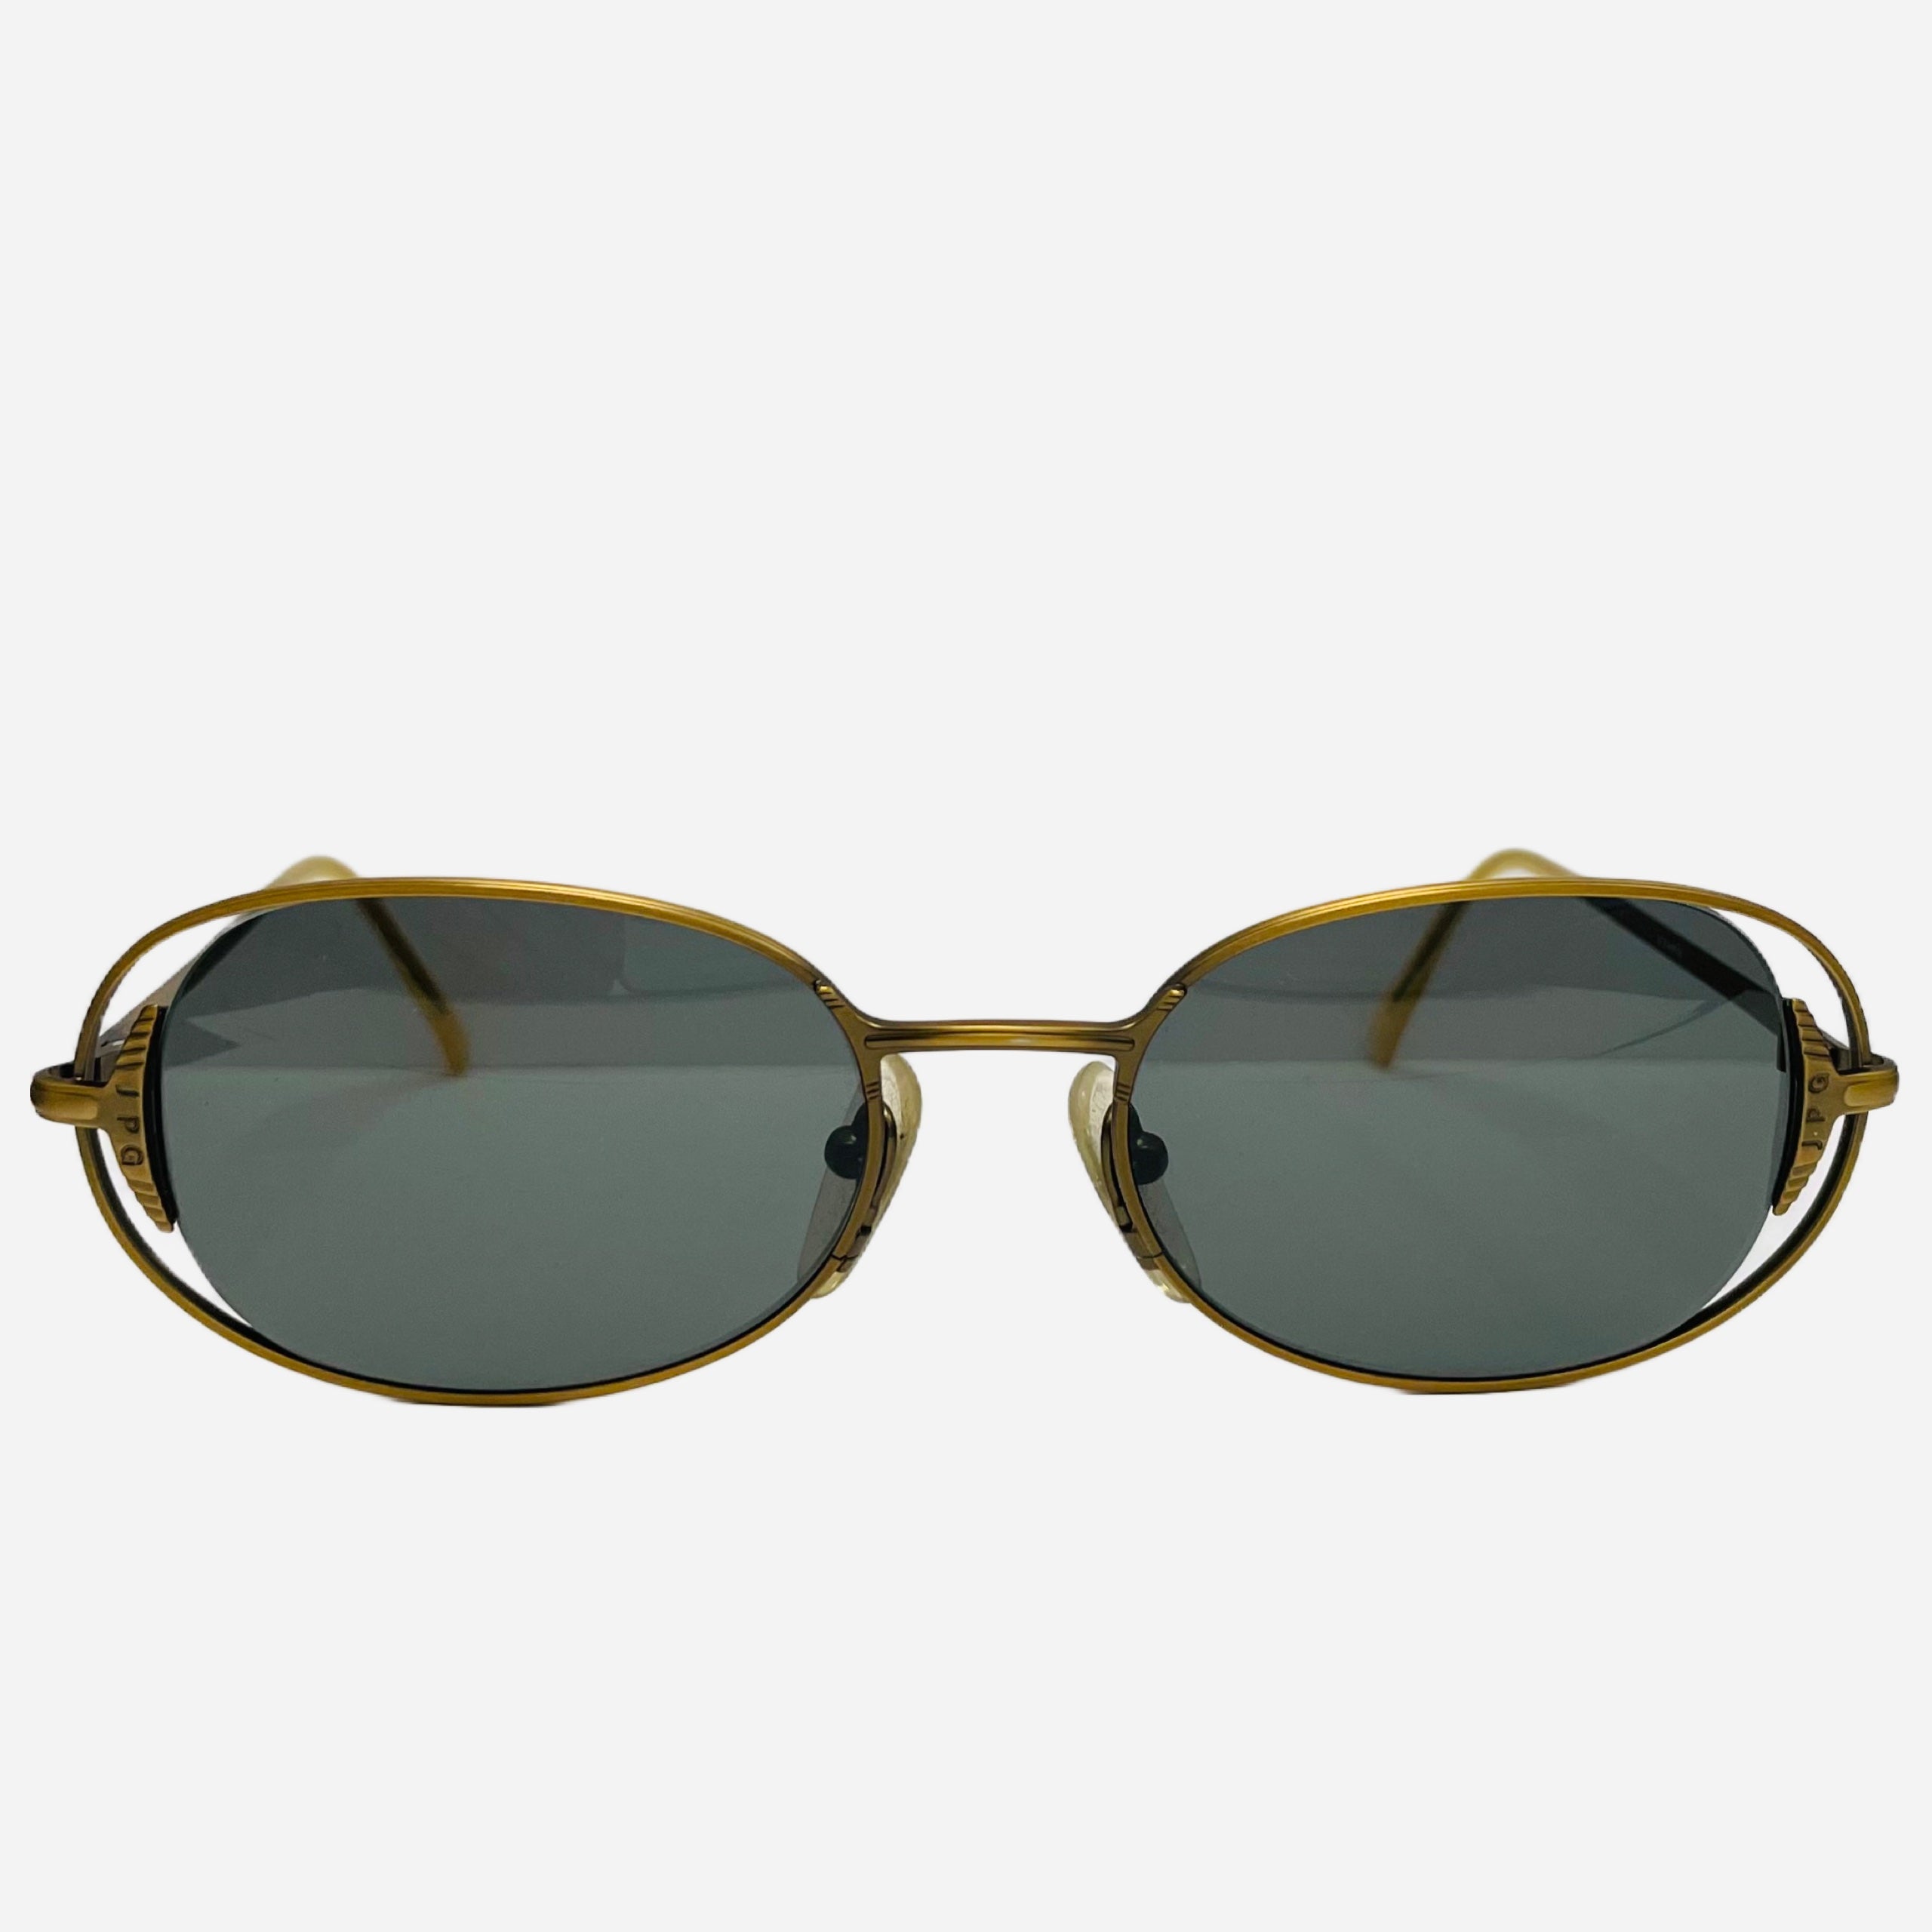 Jean Paul Gaultier sunglasses-